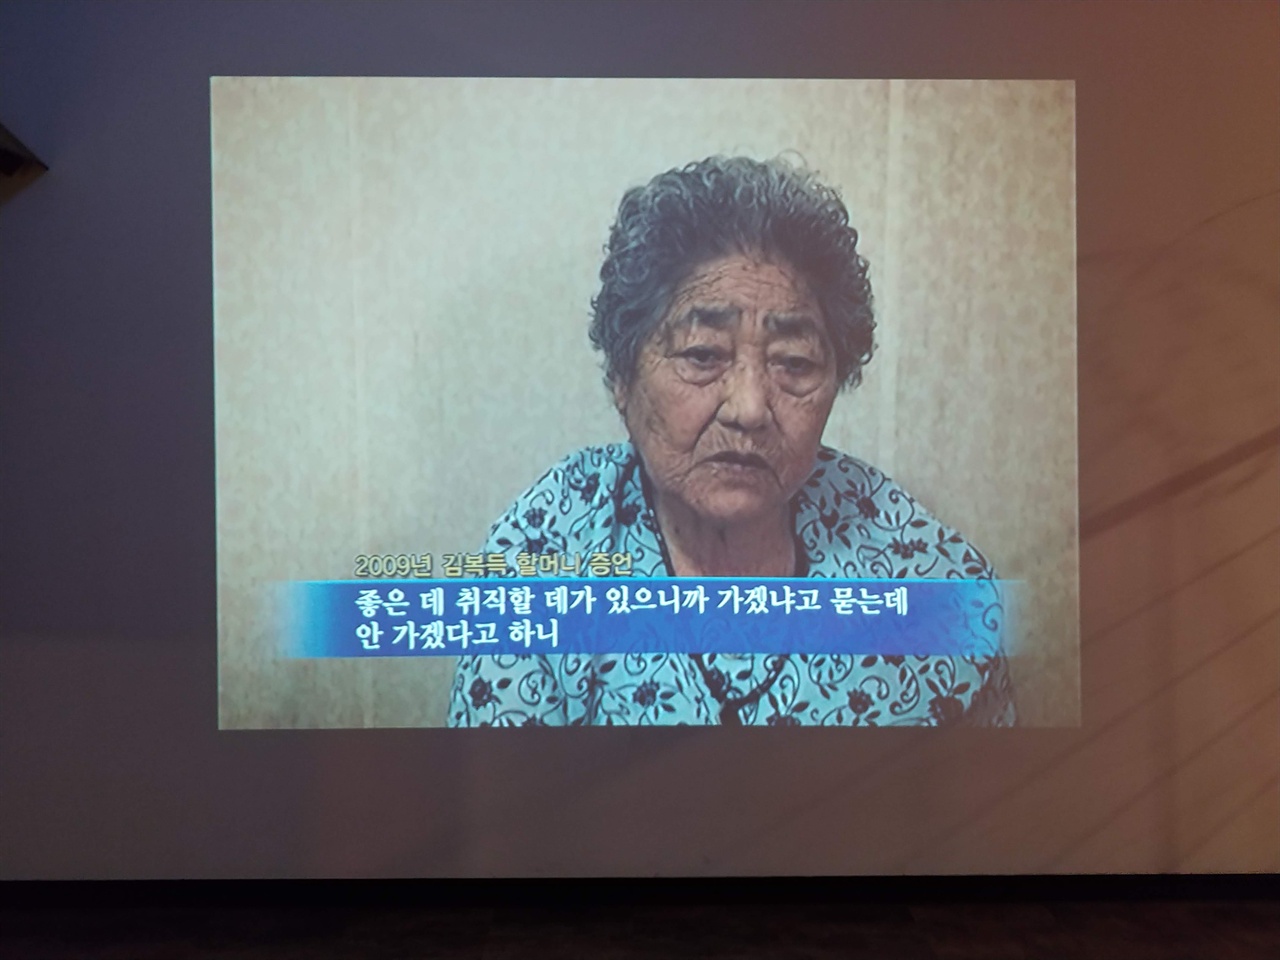 위안부의 실상을 알리기 위해 노력하셨던 김복득 할머니는 2018년 제대로 된 사과를 받지 못한 채 세상을 떠났다. 